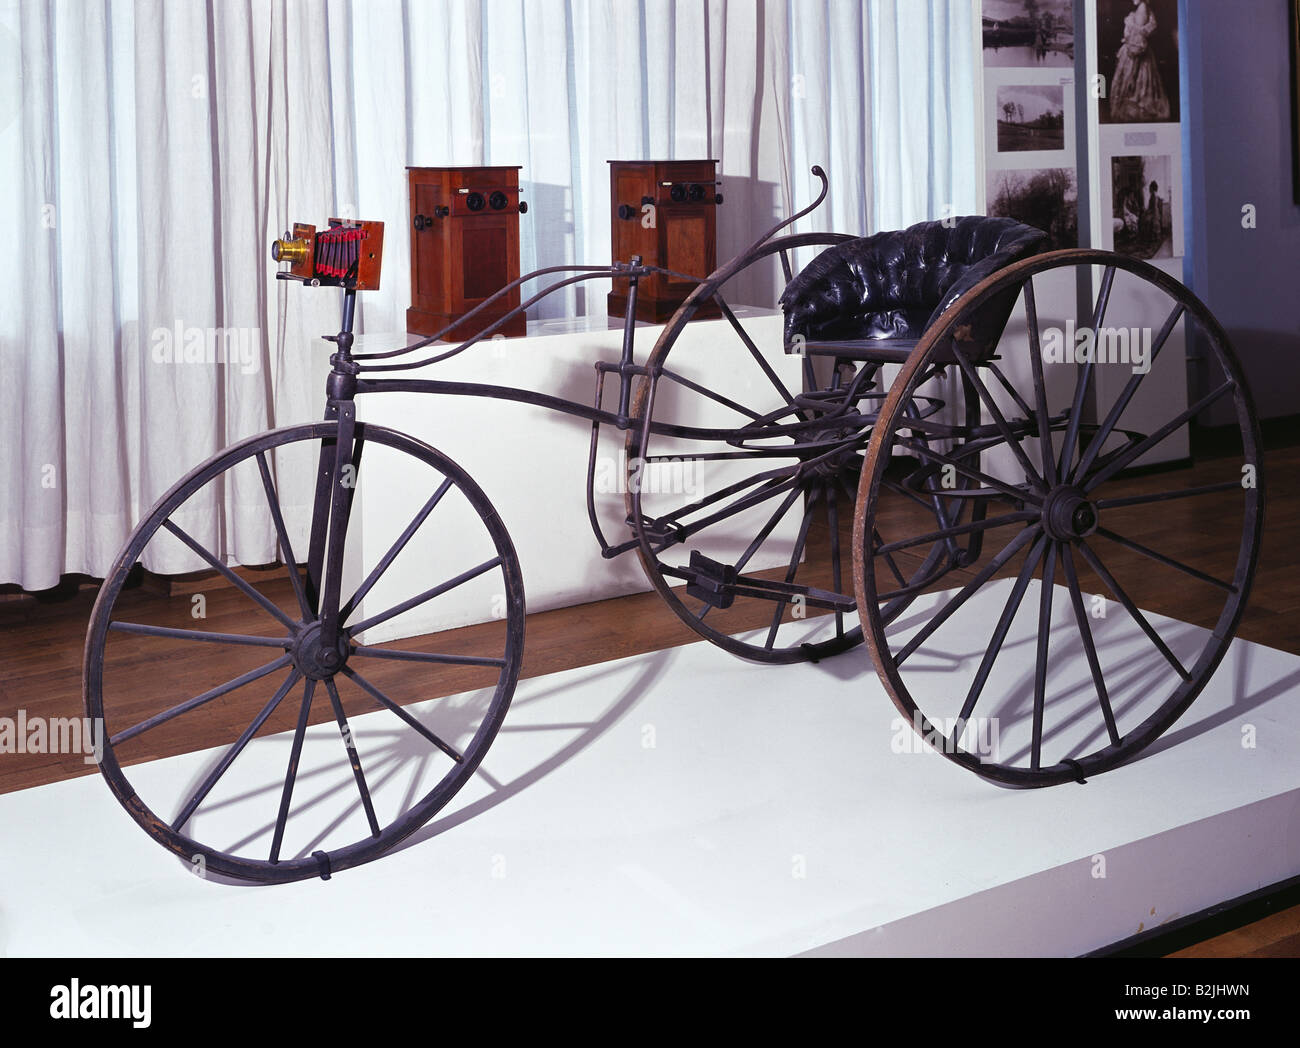 Photographie, appareils photo, tricycle d'un photographe comme trépied pour un appareil photo, Allemagne, vers 1872, Banque D'Images